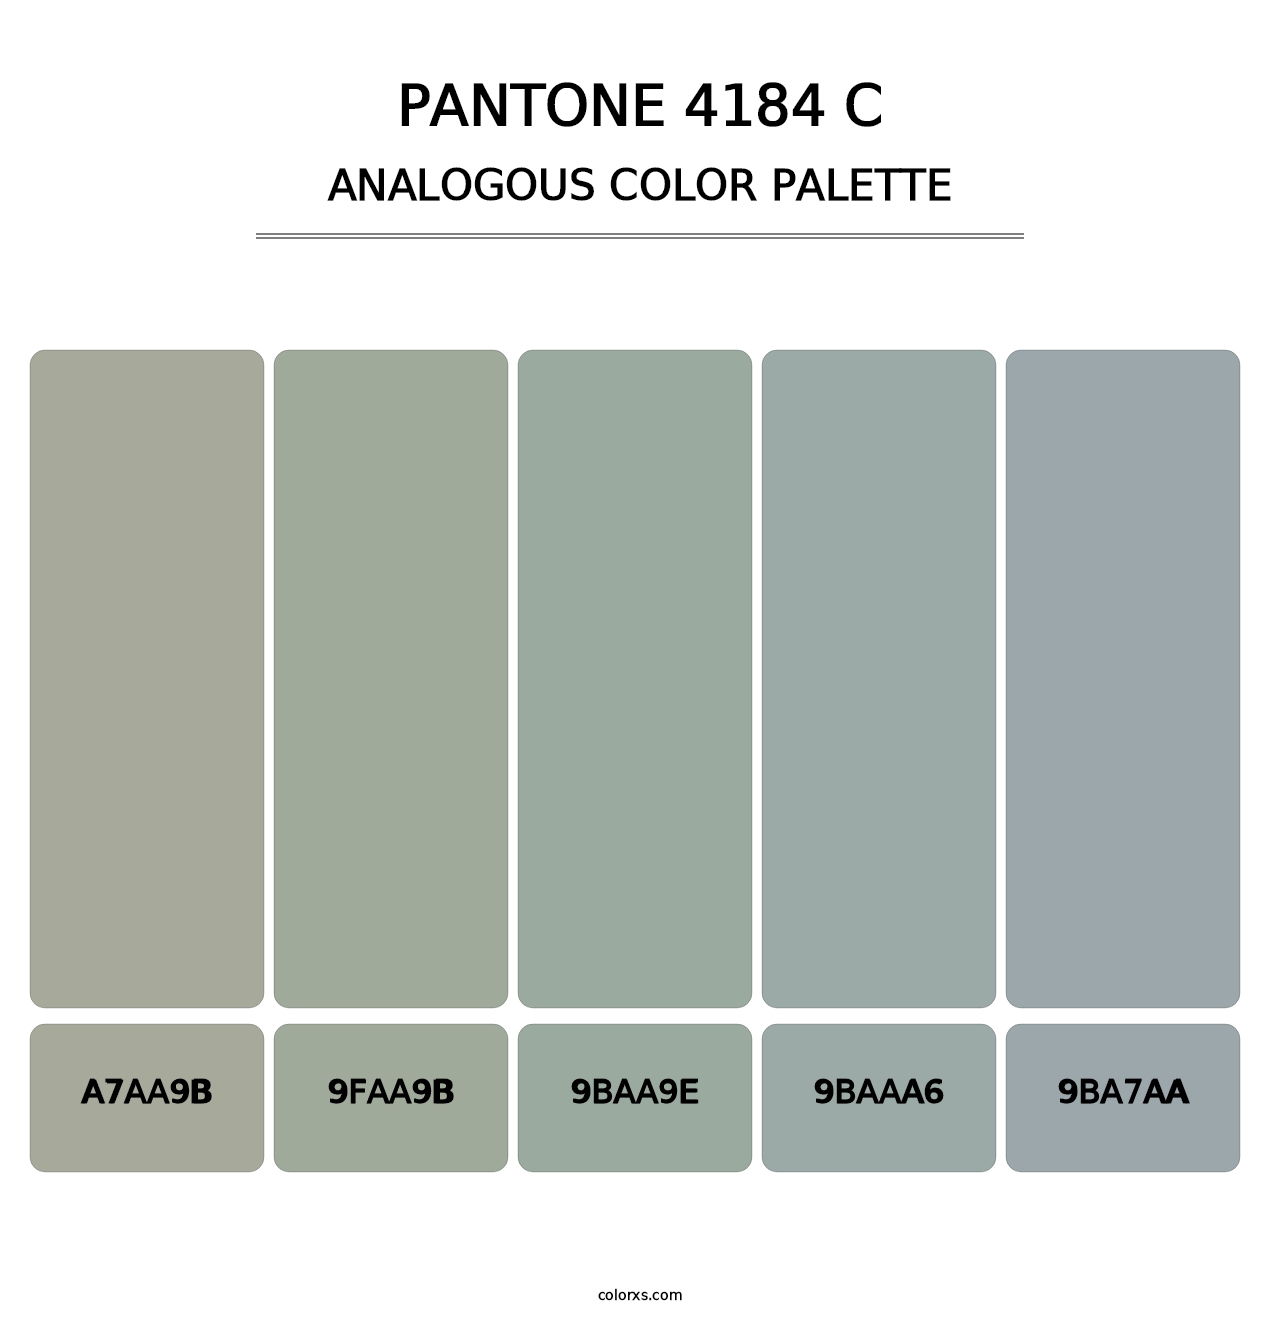 PANTONE 4184 C - Analogous Color Palette